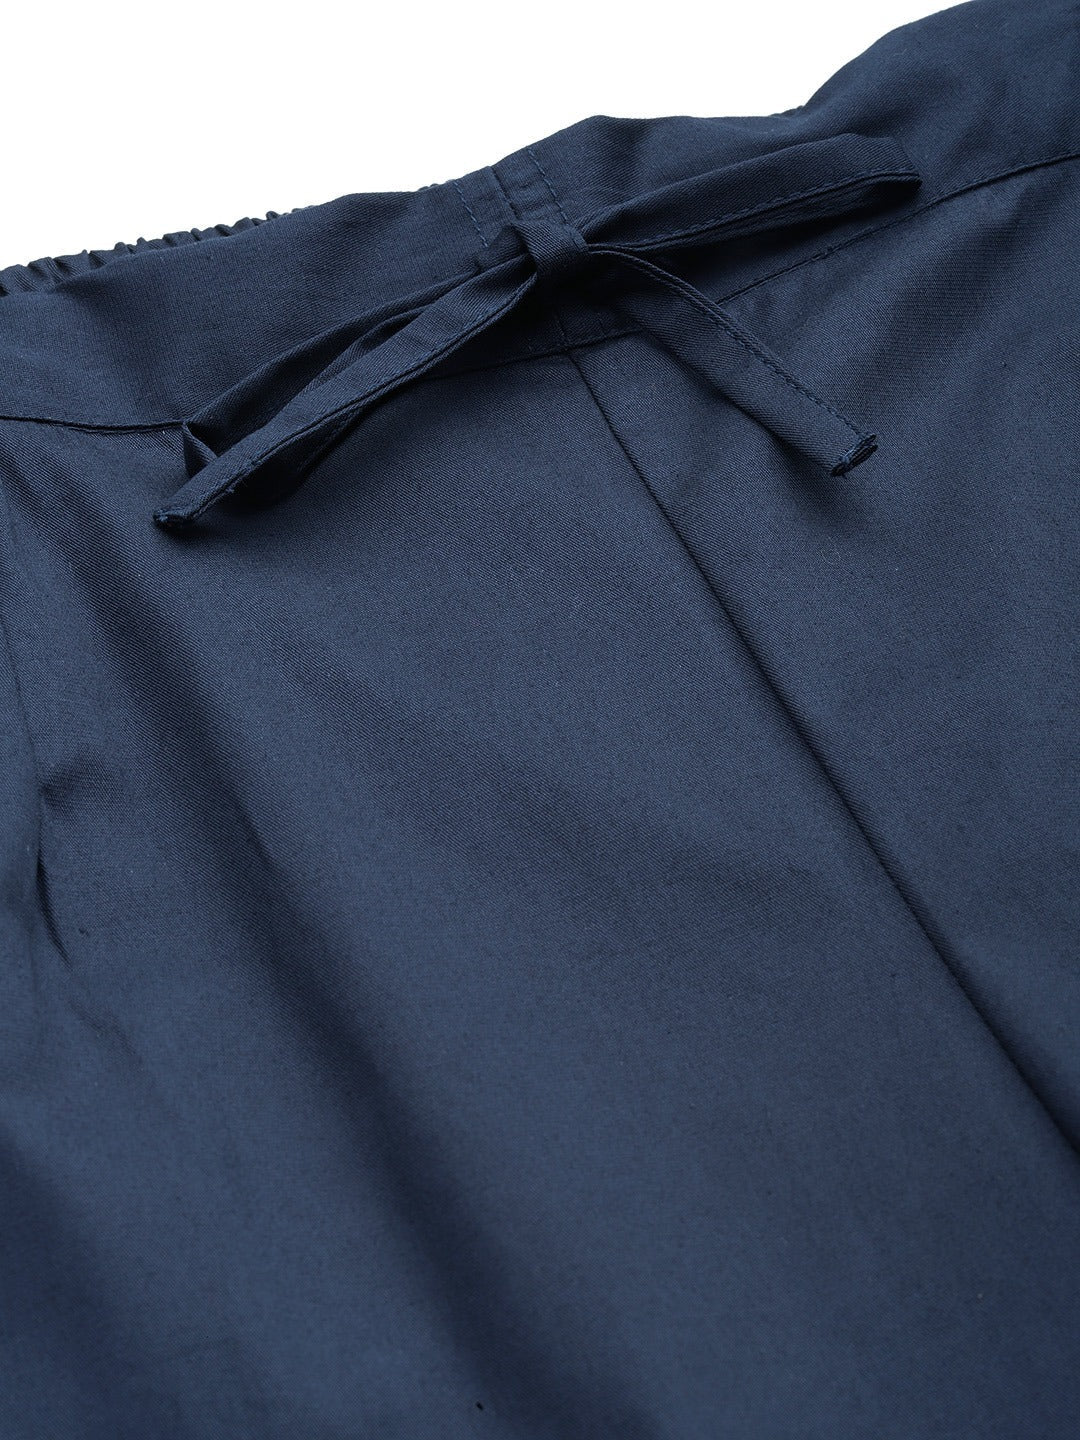 Cotton Lycra Fabric Navy Blue Color Trouser